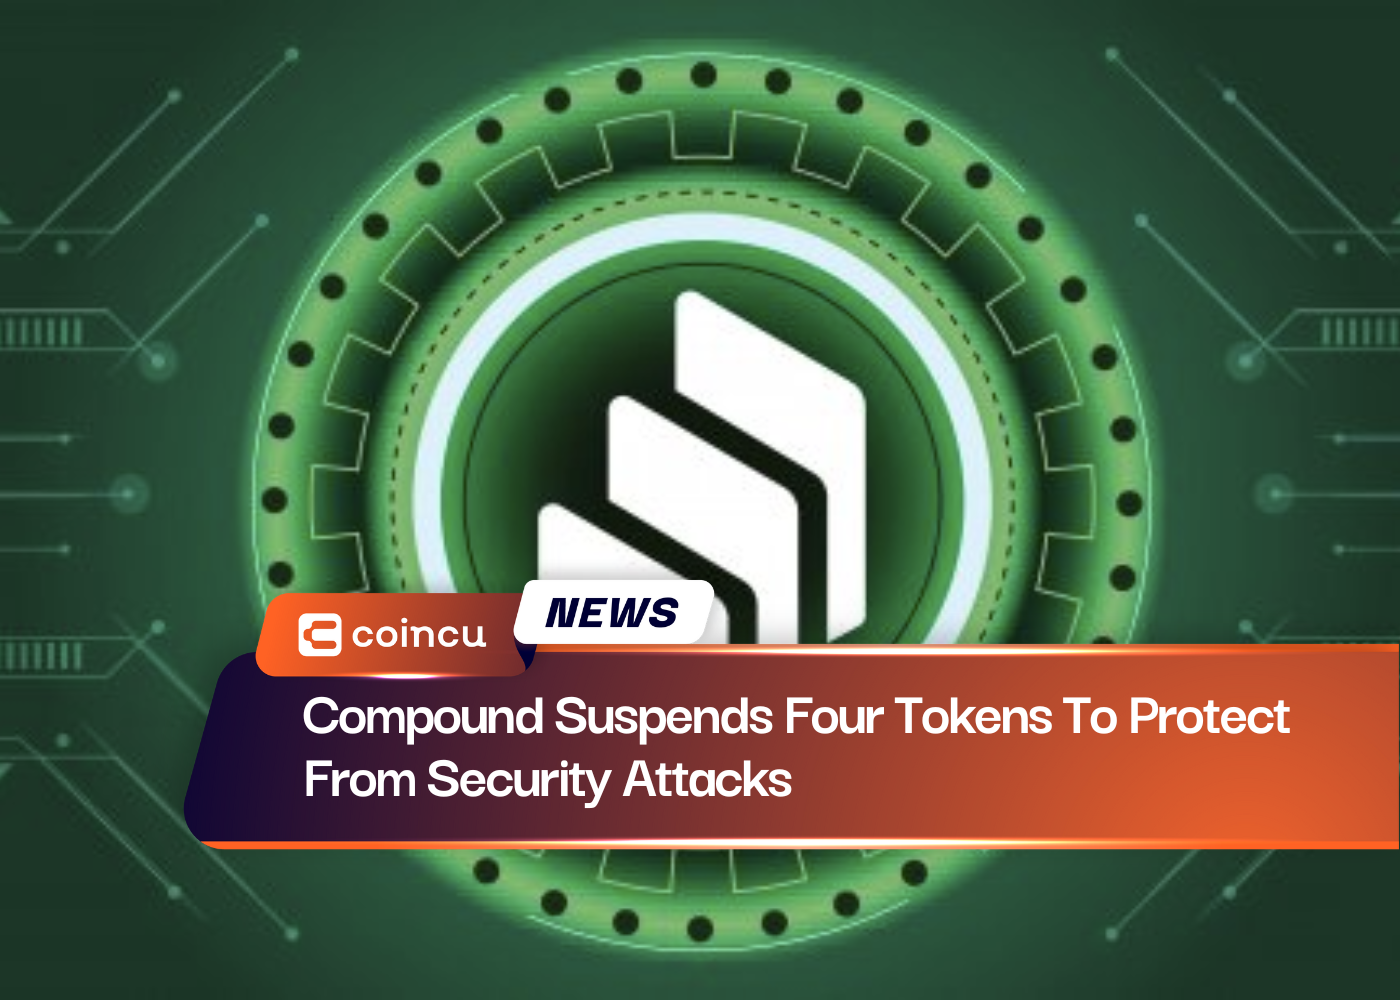 El compuesto suspende cuatro tokens para protegerse de ataques a la seguridad